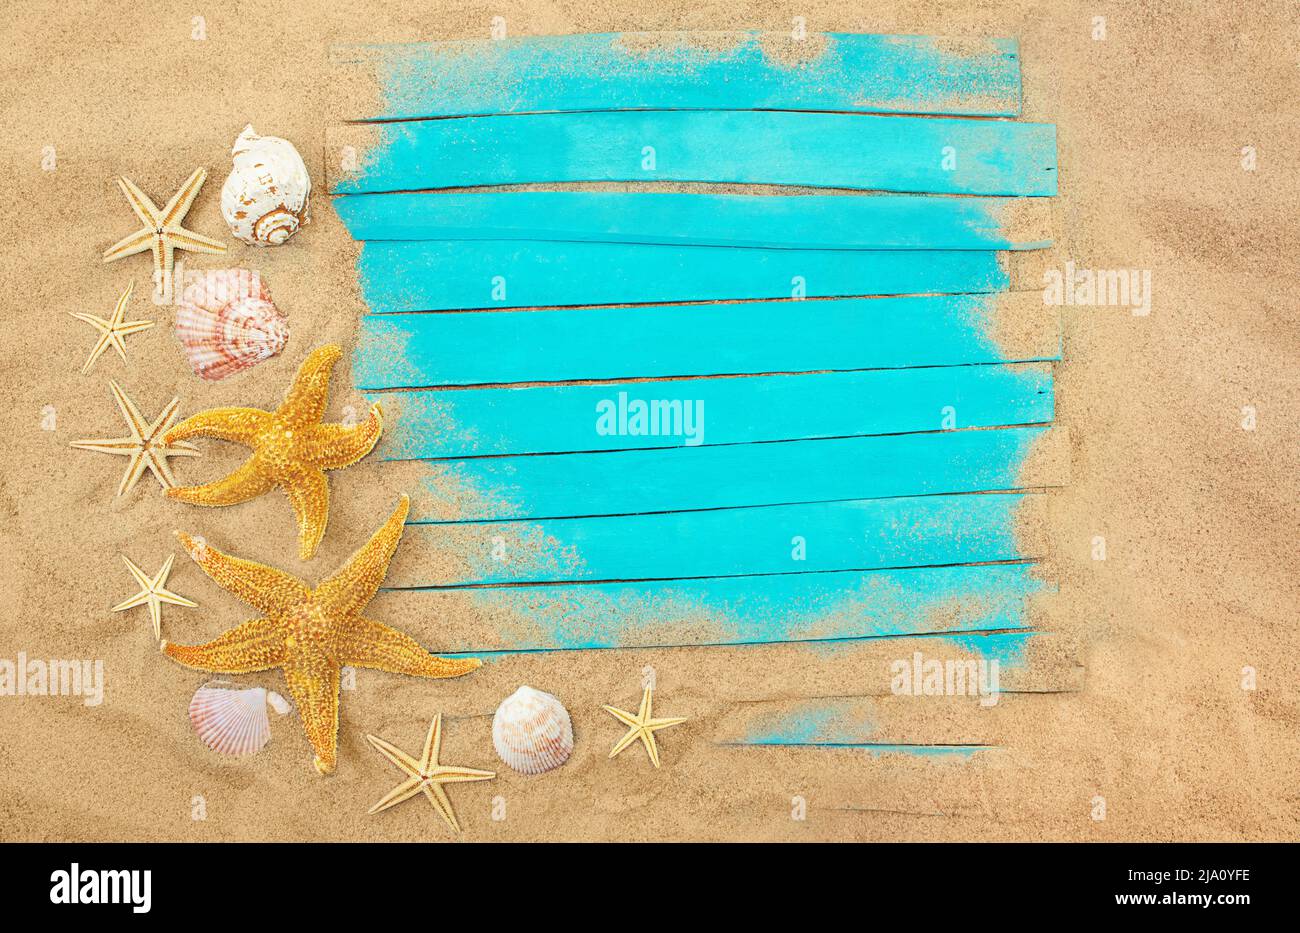 Planches en bois bleu avec étoiles de mer, coquillages dans le sable. Cadre d'été. Concept de vacances, mer, voyage. Copier l'espace Banque D'Images